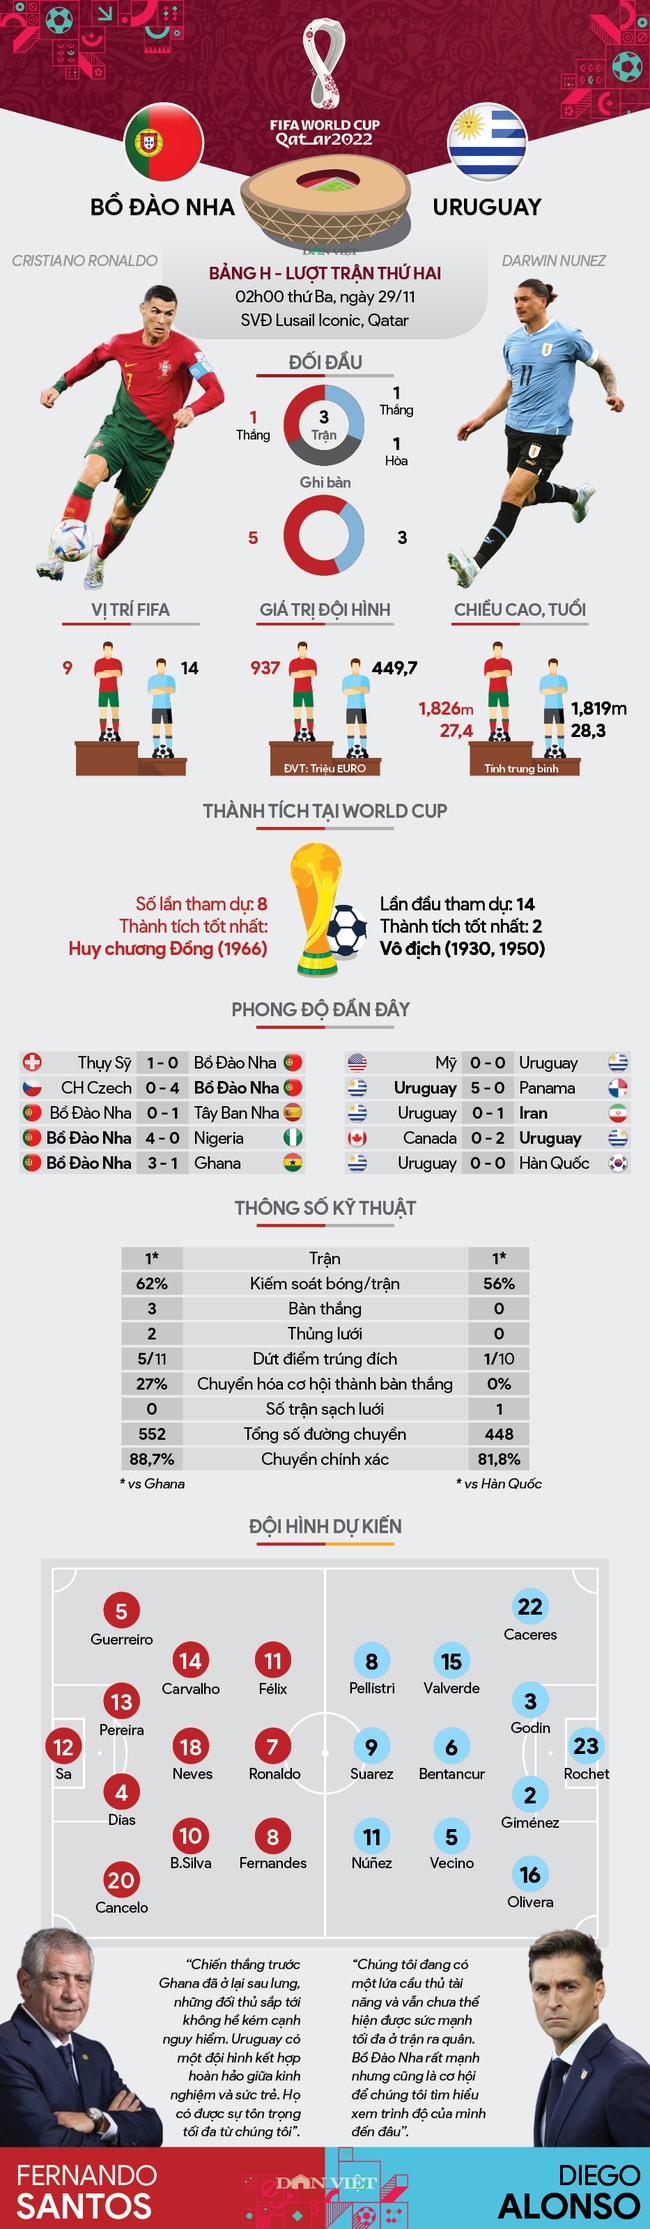 Info thống kê Bồ Đào Nha vs Uruguay (02h00 ngày 29/11, bảng H World Cup 2022): Hài lòng với một điểm - Ảnh 1.